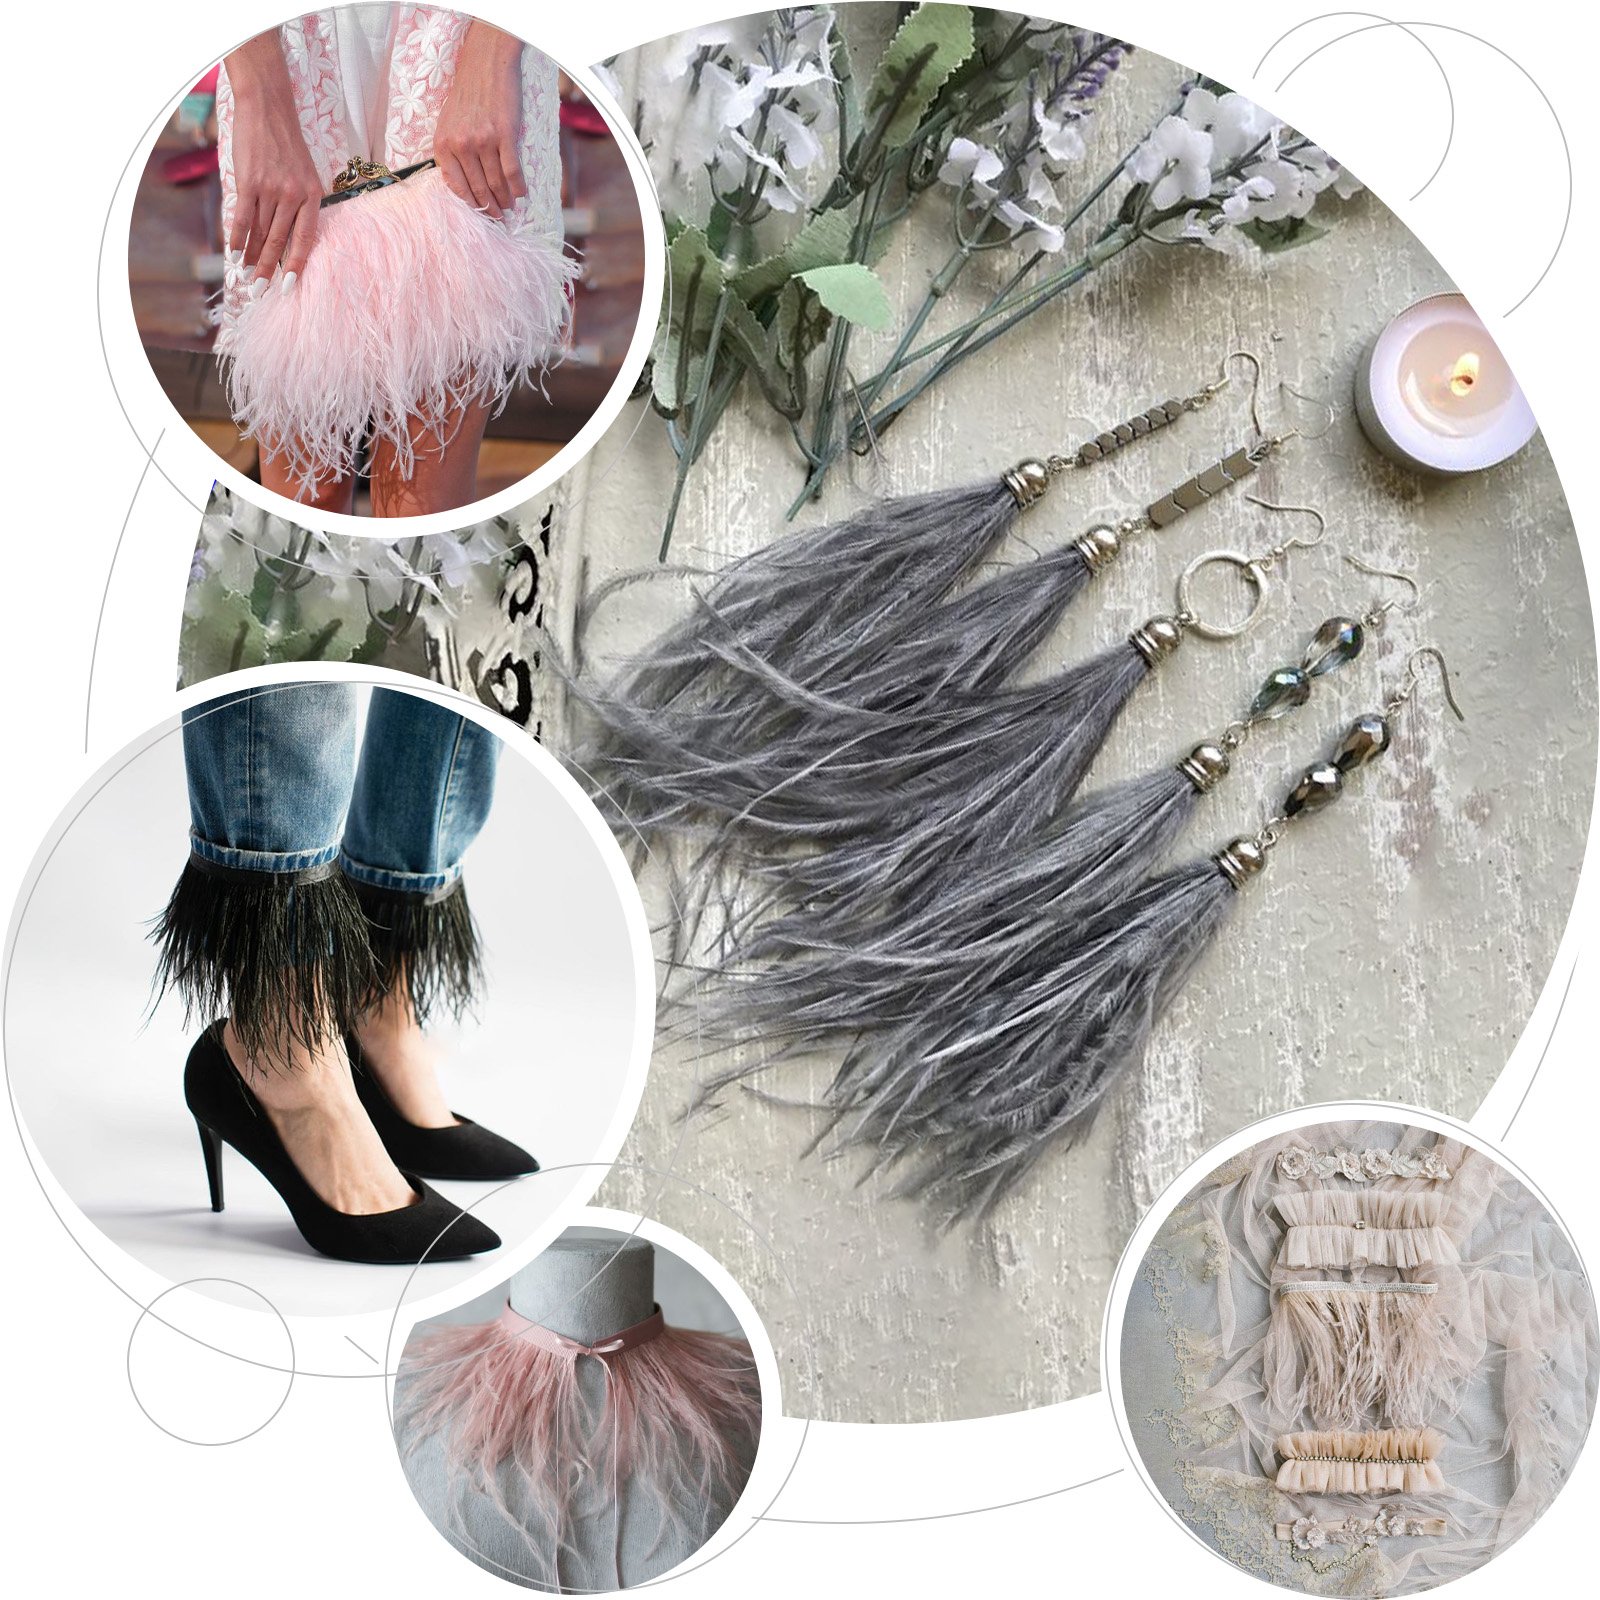 Adorno de plumas de avestruz de 1 metro, cinta de plumas de 8-10 CM, orillo para decoración de ropa de boda DIY, accesorios artesanales al por mayor